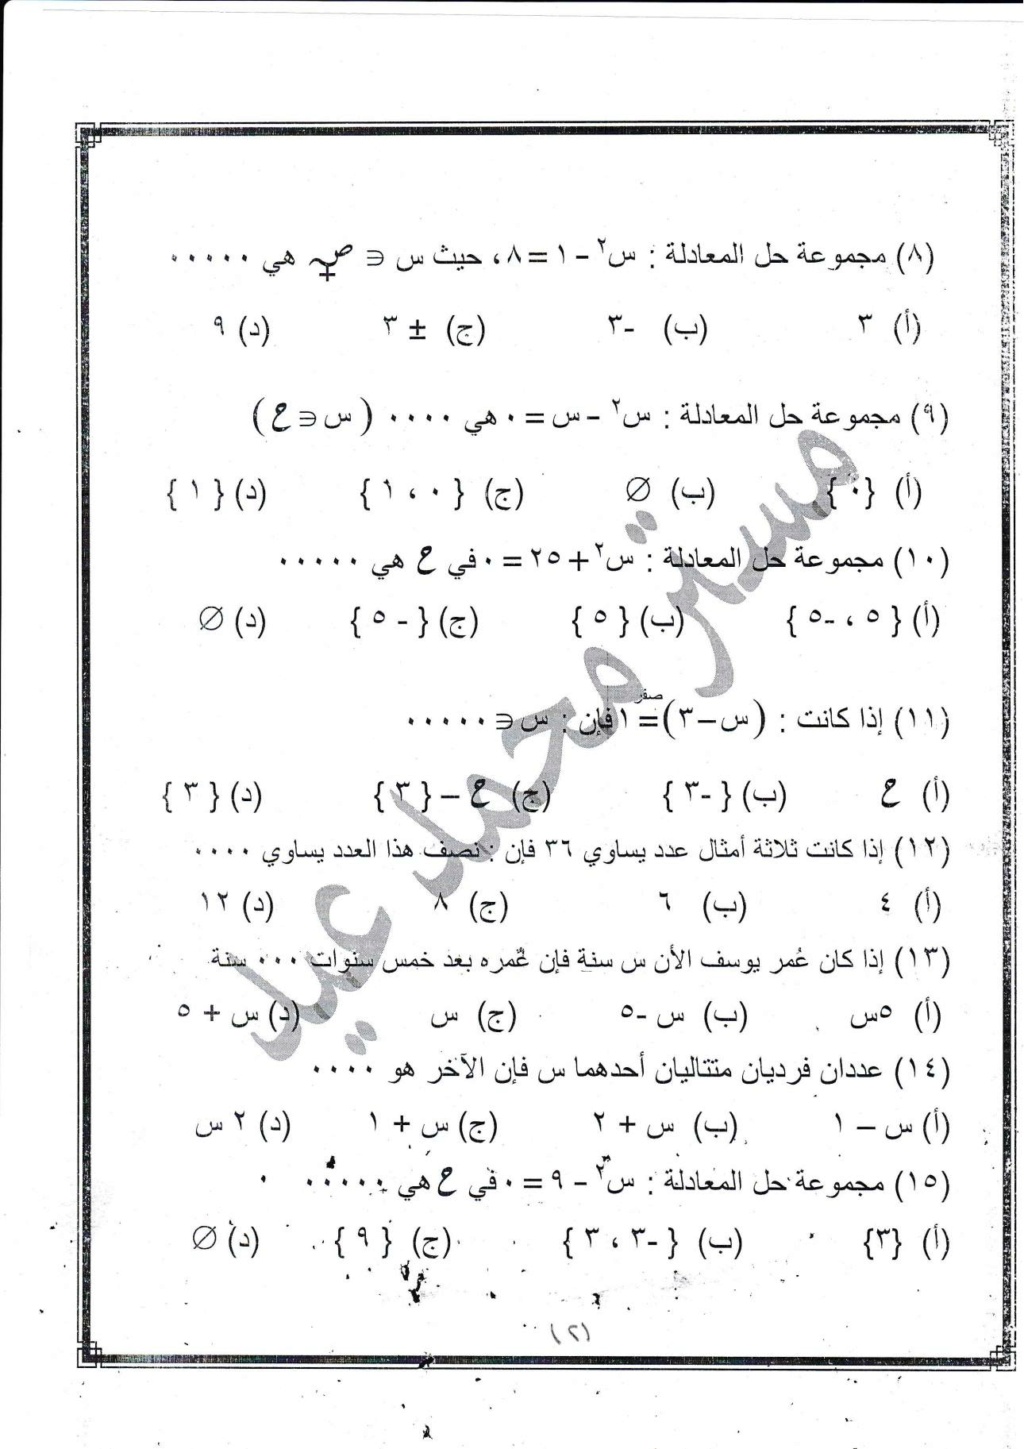 مراجعة رياضيات للصف الثانى الإعدادى على مقرر شهر إبريل مستر / محمد عيد 17453610